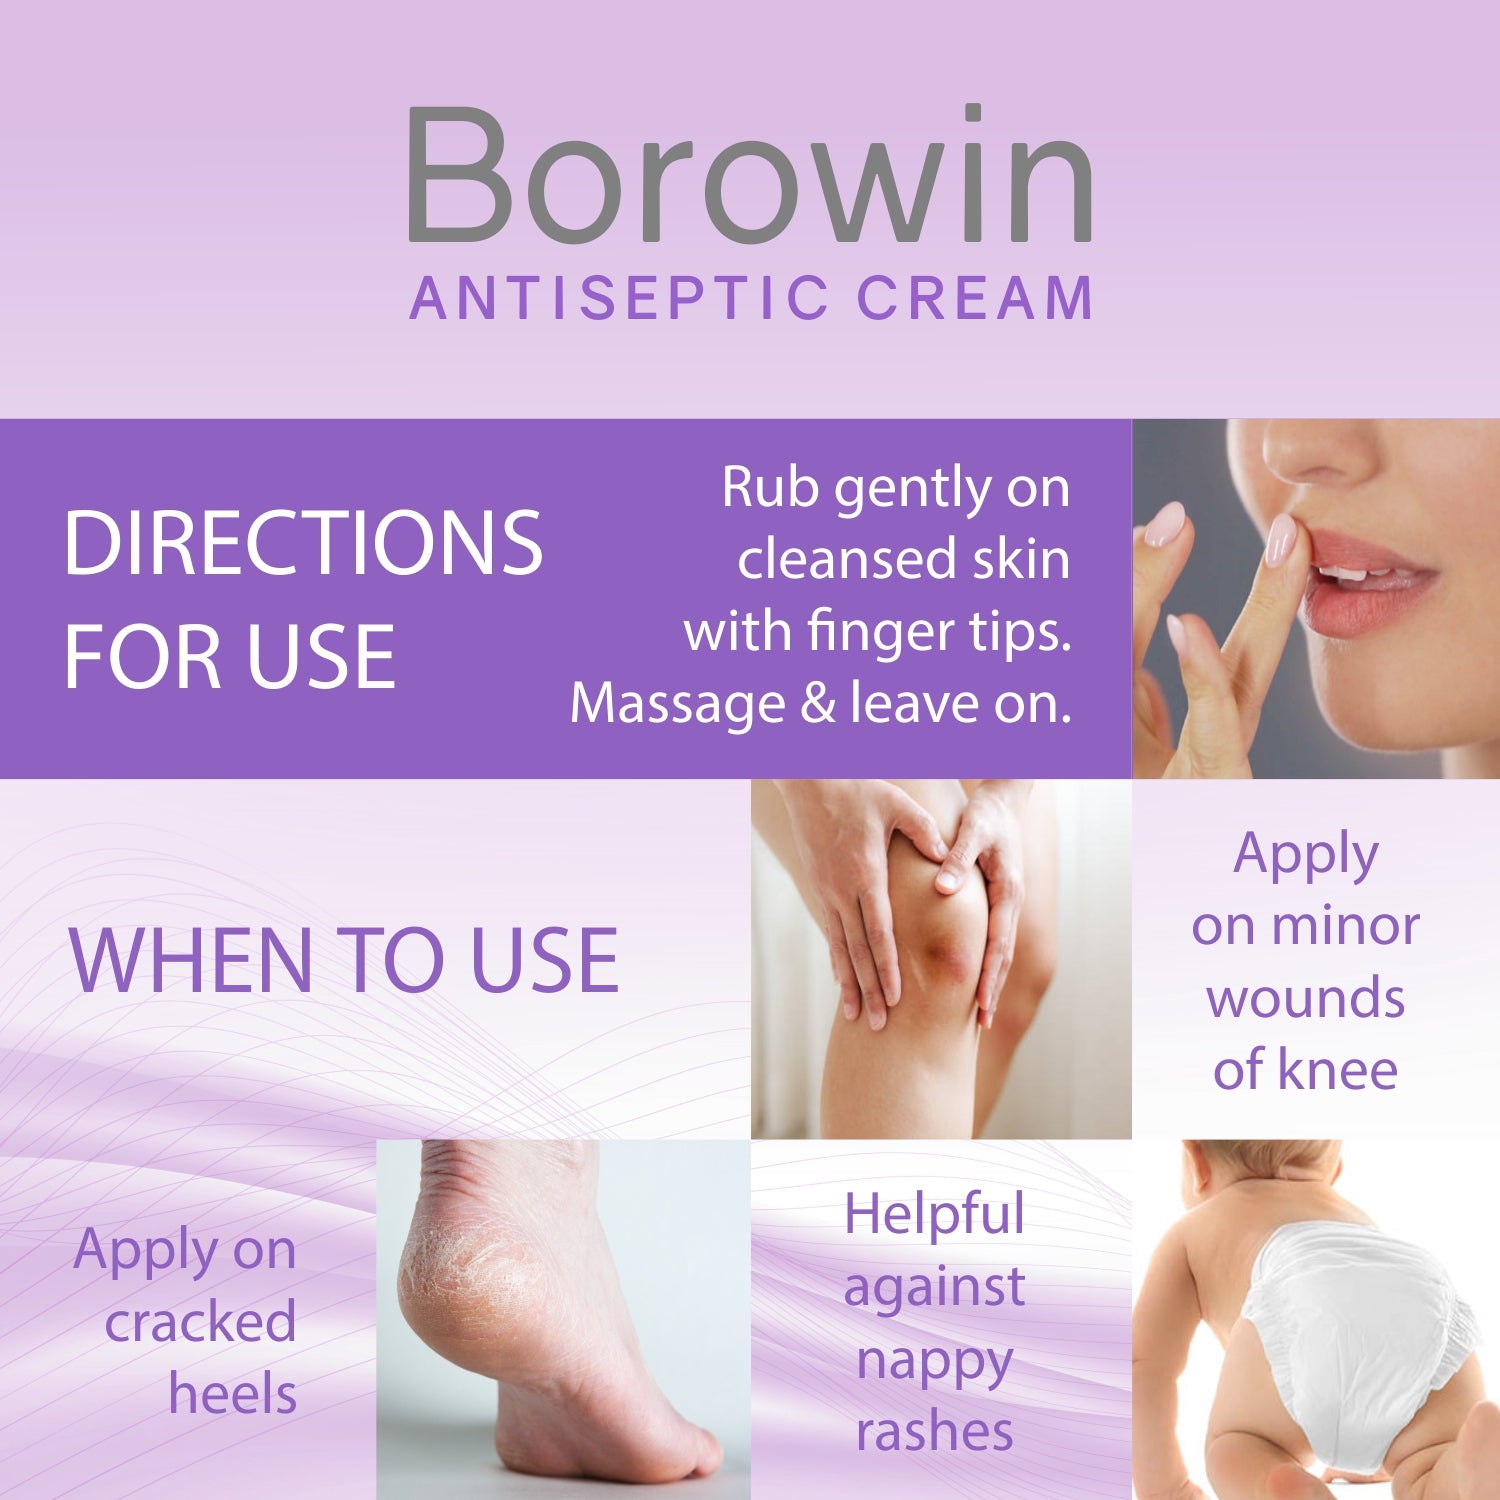 Borowin Antiseptic Cream (30 gm)